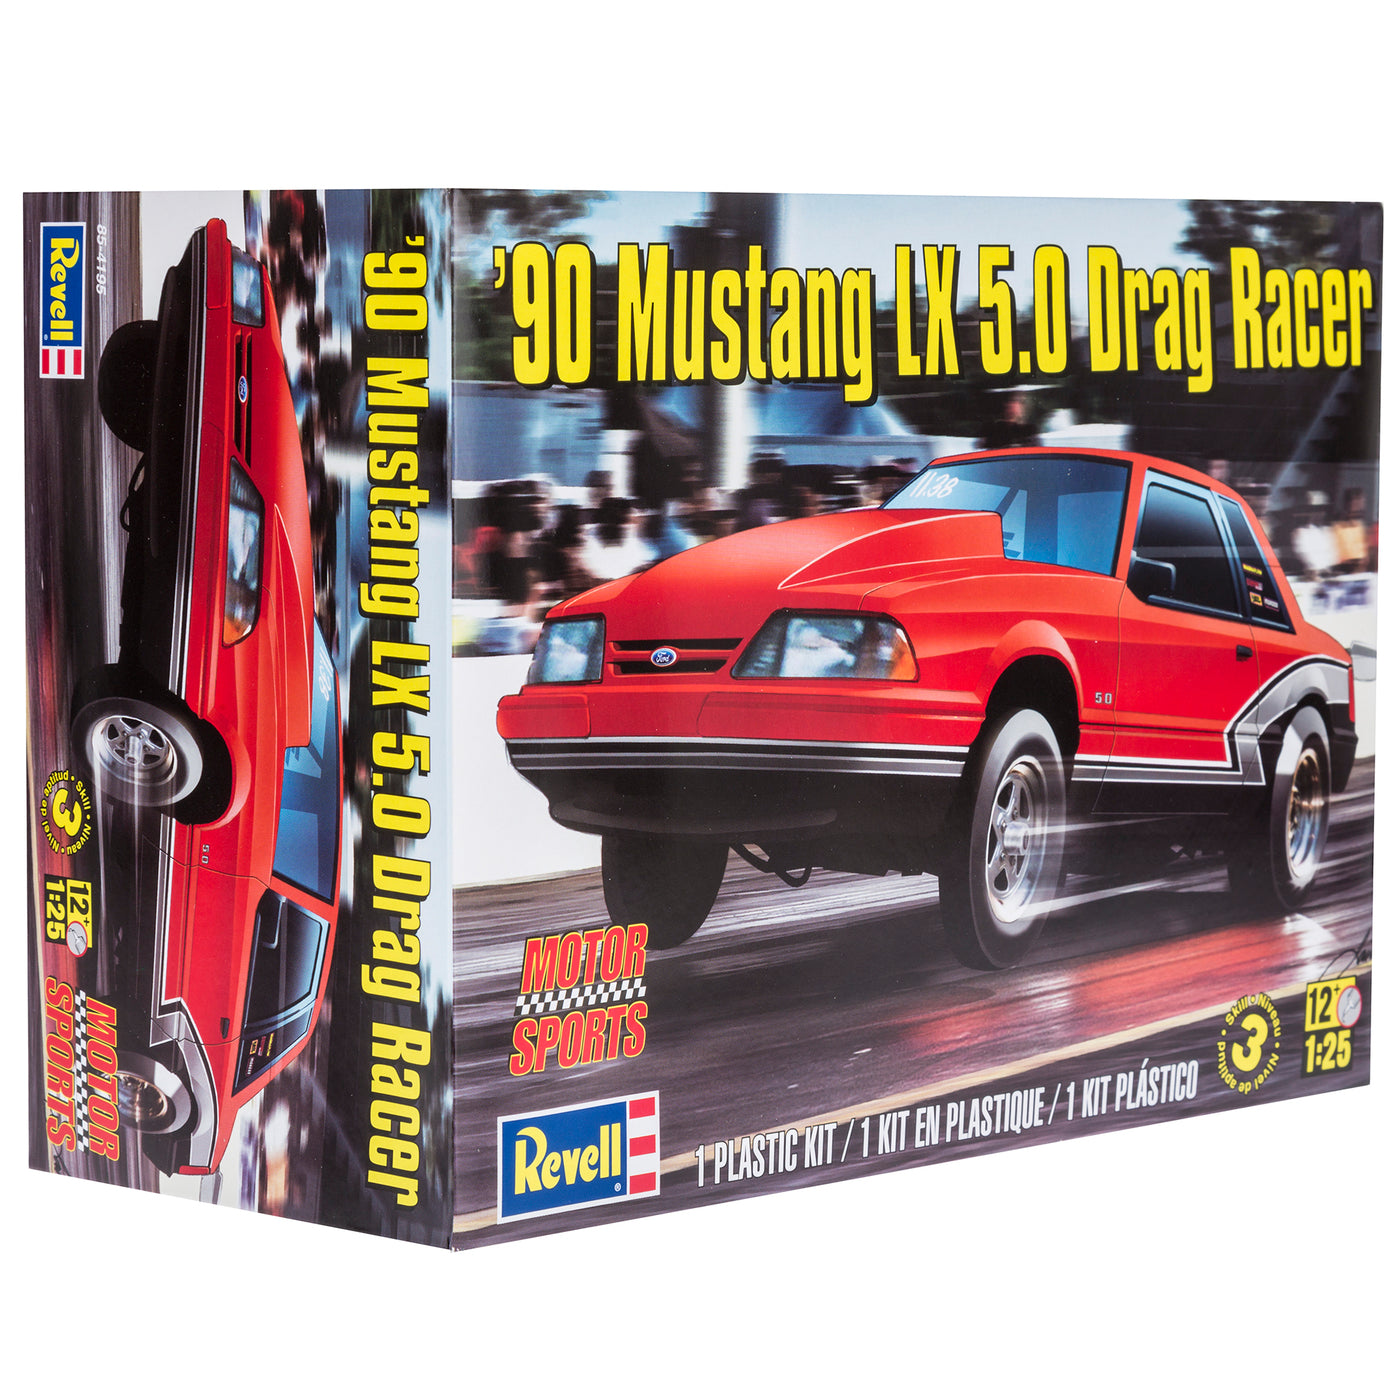 REVELL 85-4195 1/25 '90 Mustang LX 5.0 Drag Racer